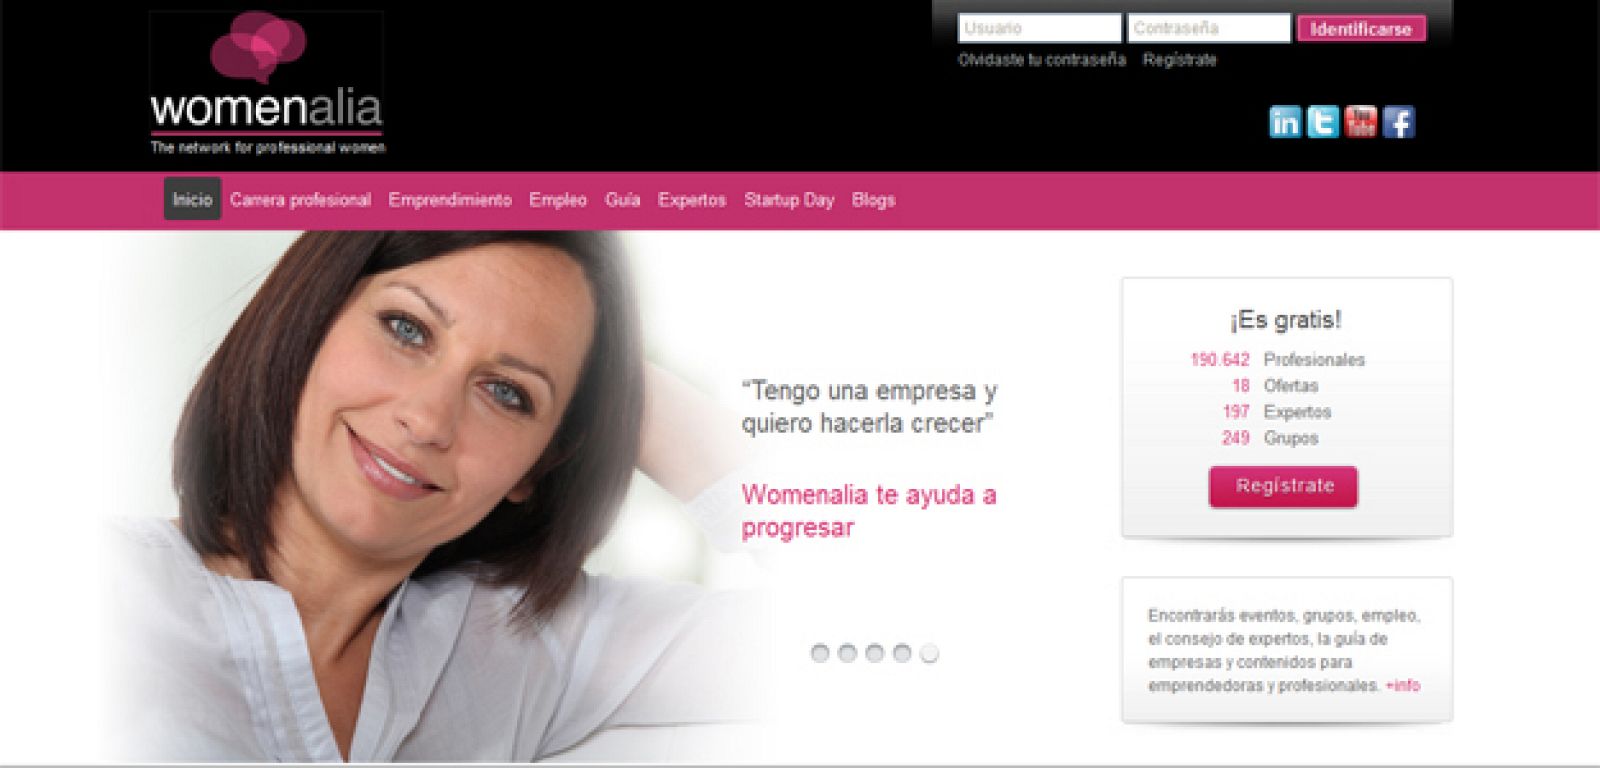 Womenalia, la red social de las mujeres profesionales